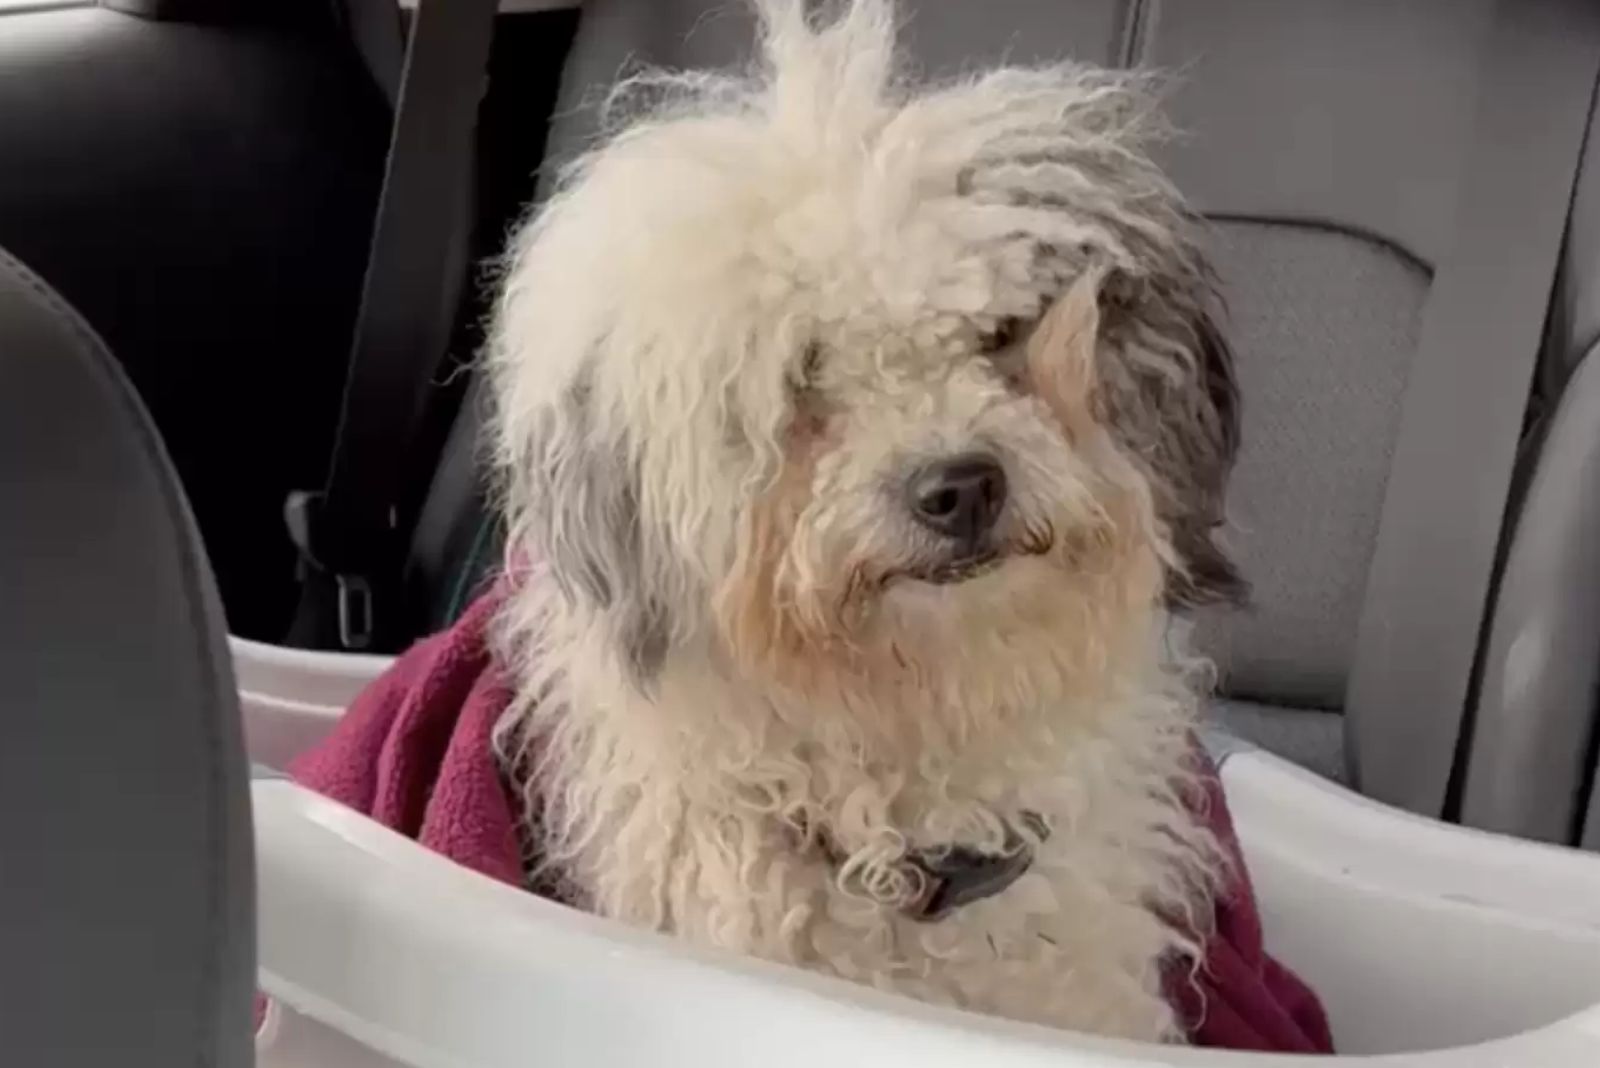 found stray dog sitting in a plastic tub